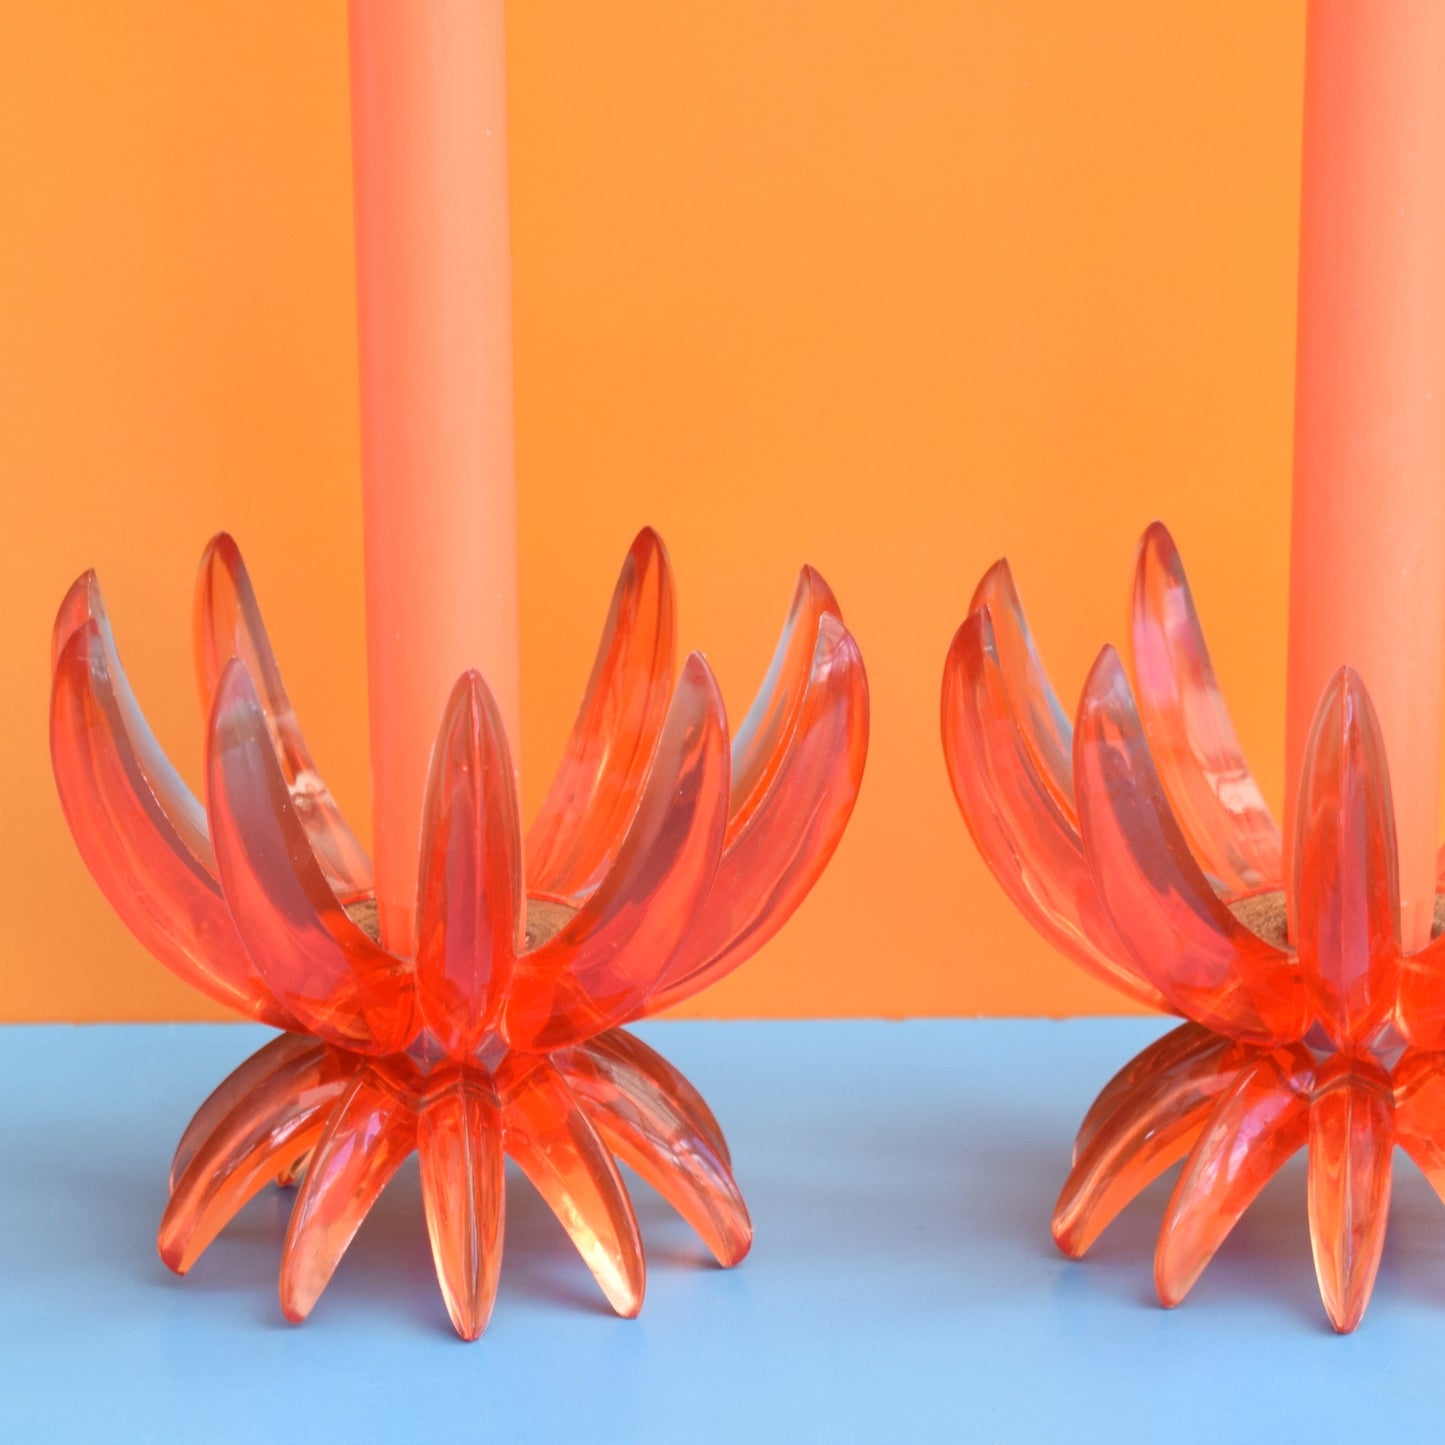 Vintage 1960s Plastic Spike Candle Holders - Orange